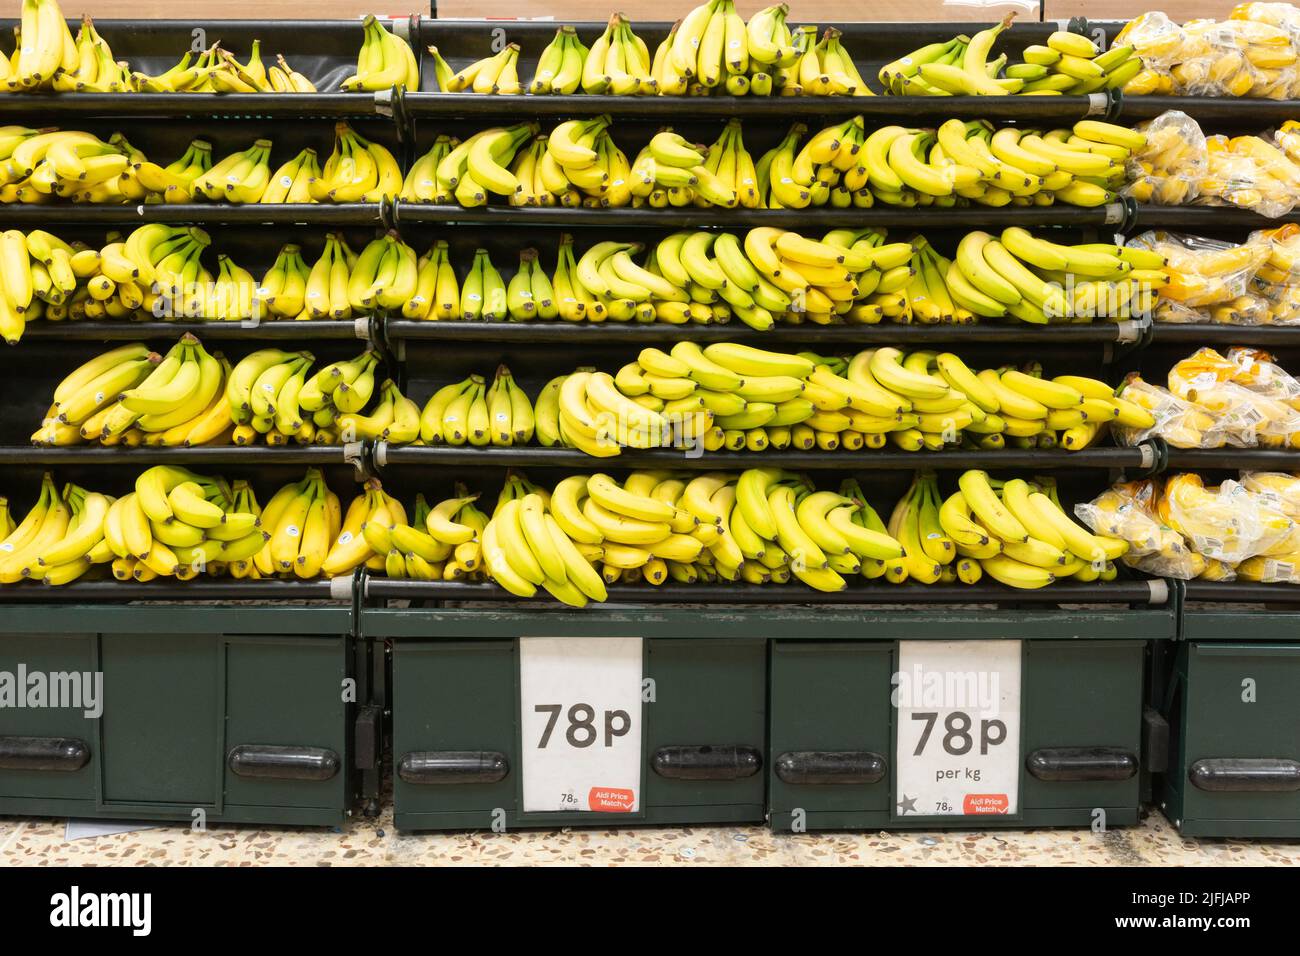 Racimos de plátanos verdes y amarillos maduros y parcialmente maduros en estantes para la venta (Cavendish cultivar) en un supermercado Tesco en Inglaterra en el Reino Unido Foto de stock